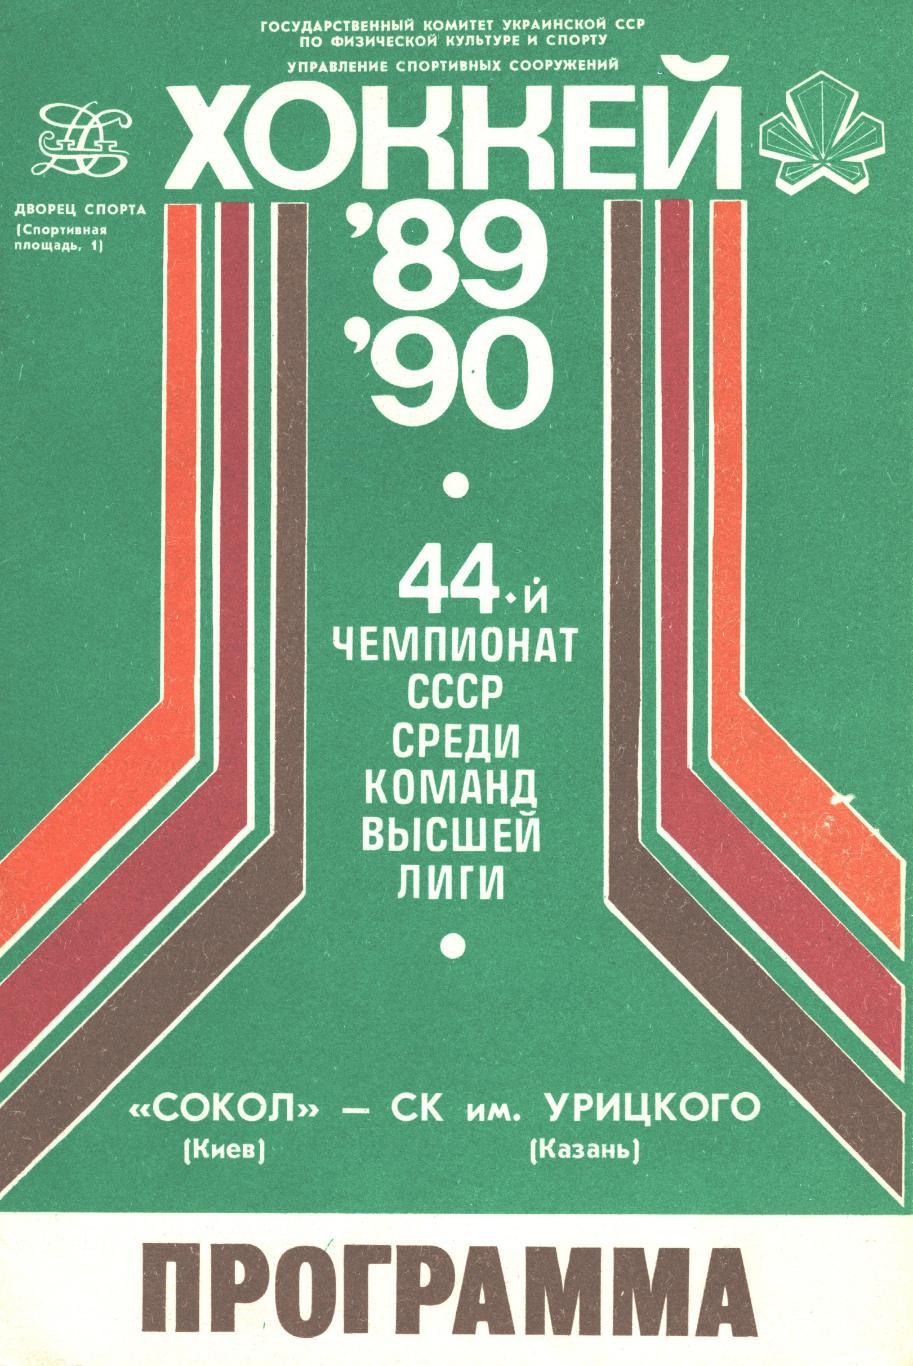 СОКОЛ (Киев) - СК им. Урицкого (Казань), 16 ноября 1989 года